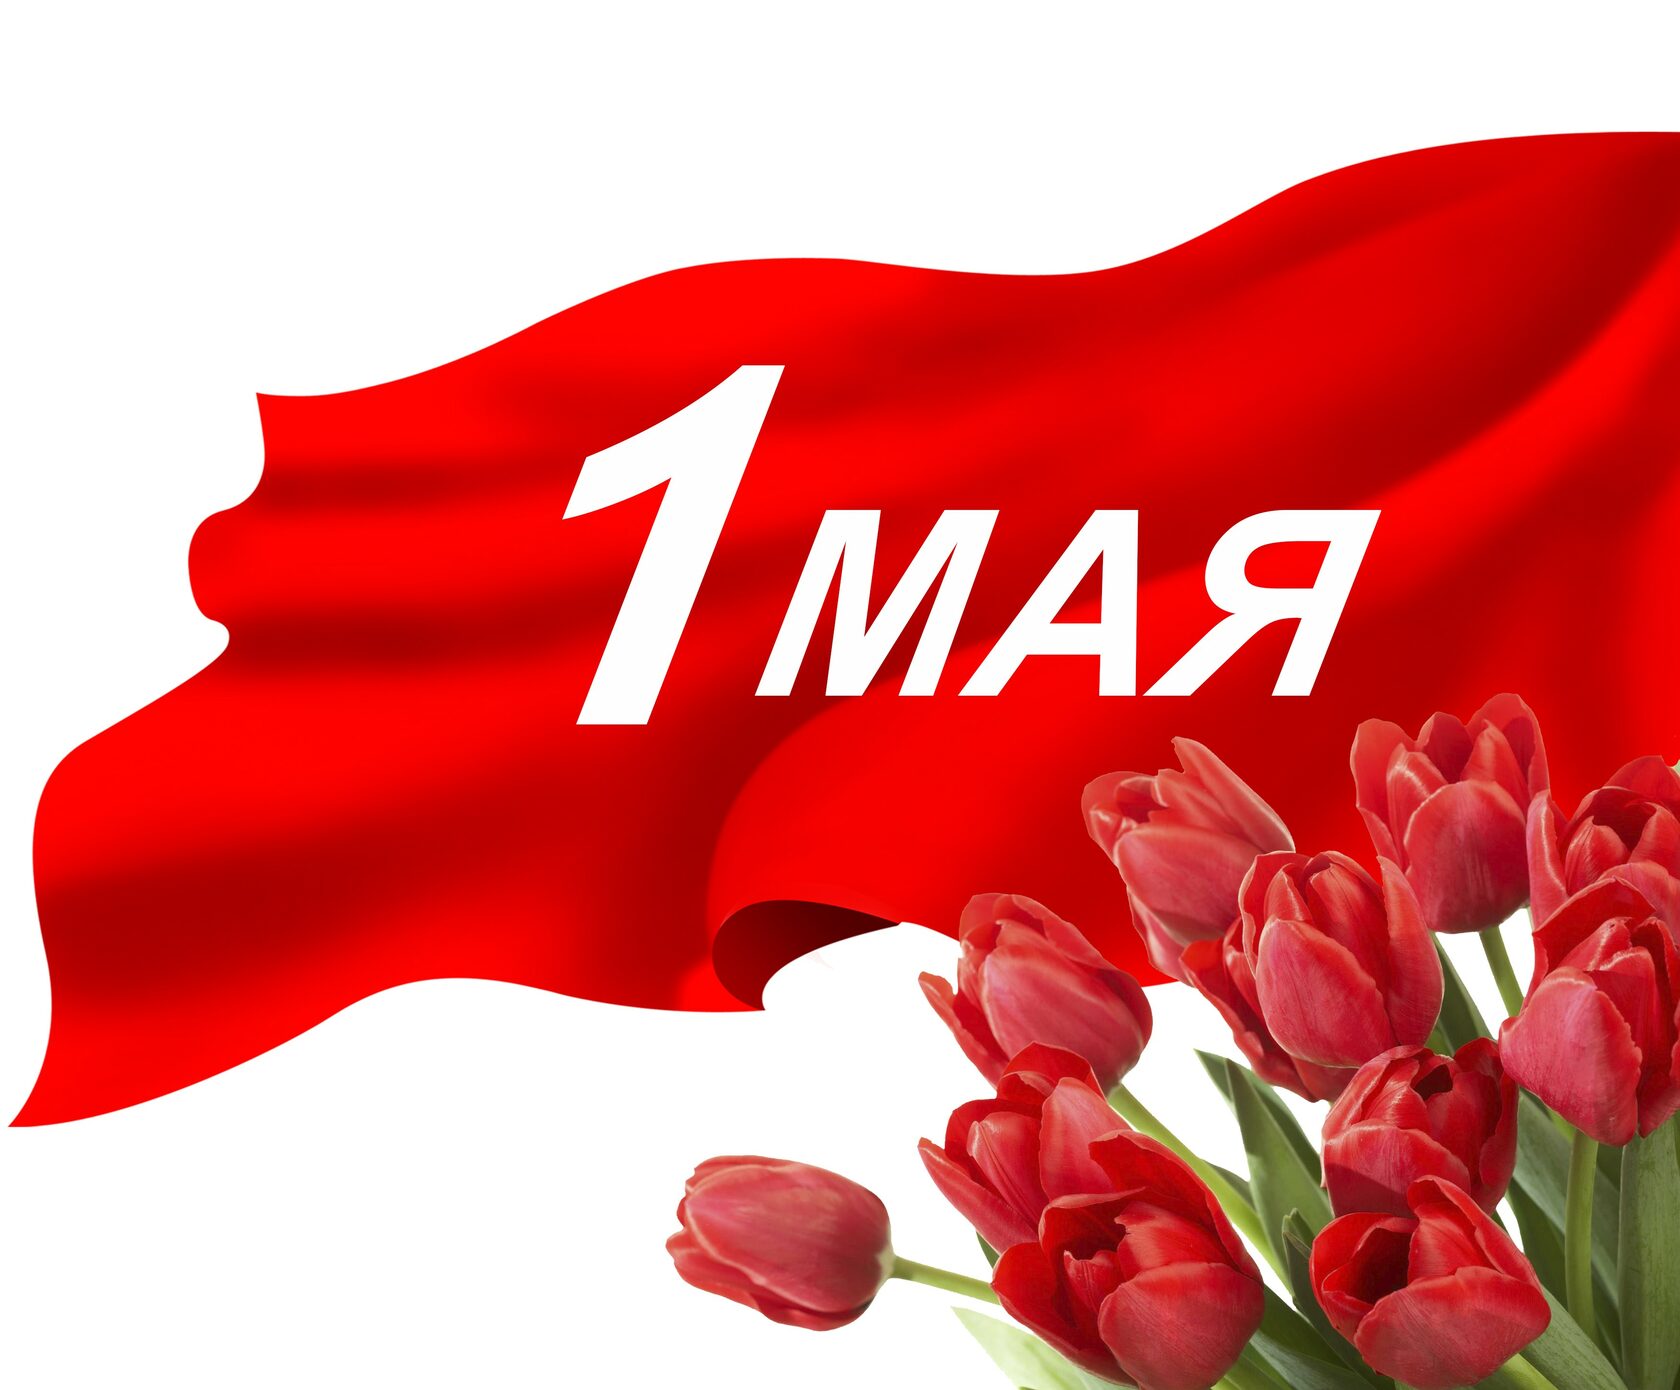 1 Мая. Праздник день весны и труда 1 мая в Москве в красный площади.